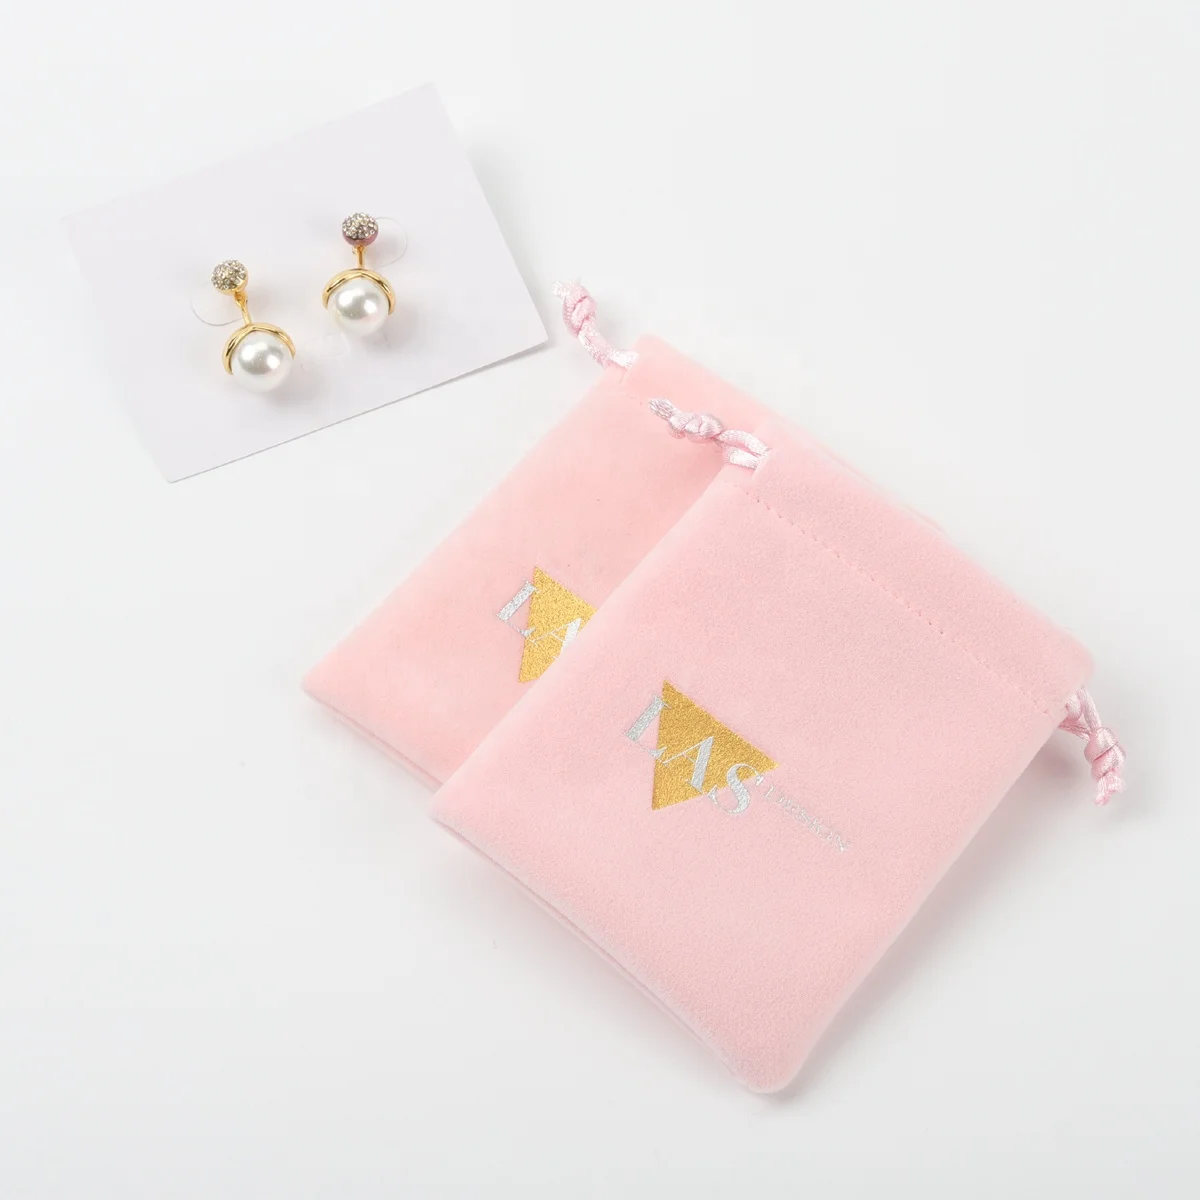 Velvet Pouch For Watch Jewelry Packaging Pink Velvet Dust Drawstring Gift Bag